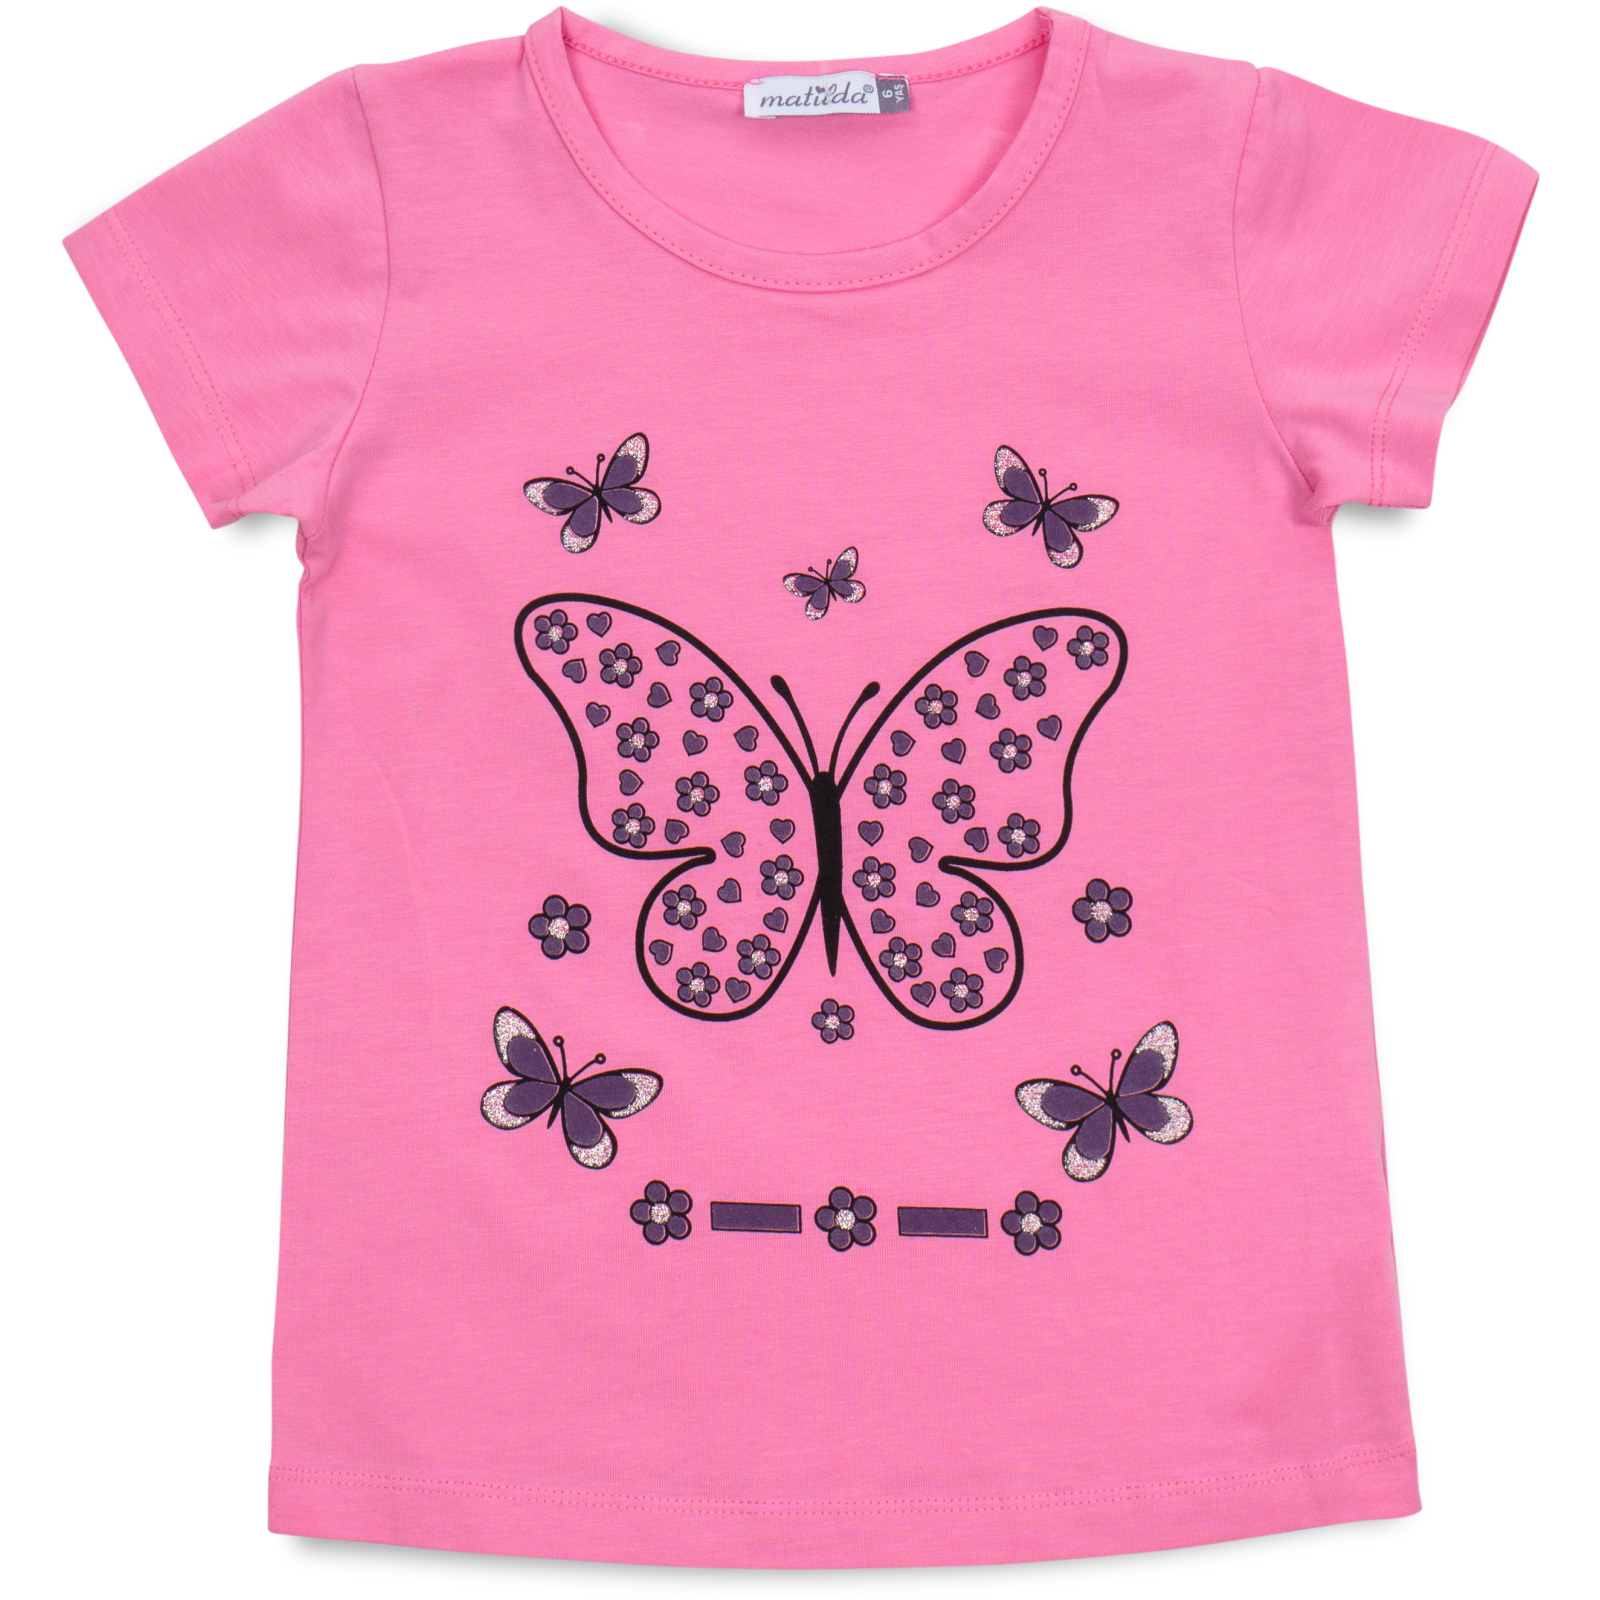 Пижама Matilda с бабочкой (12247-3-122G-pink) изображение 2